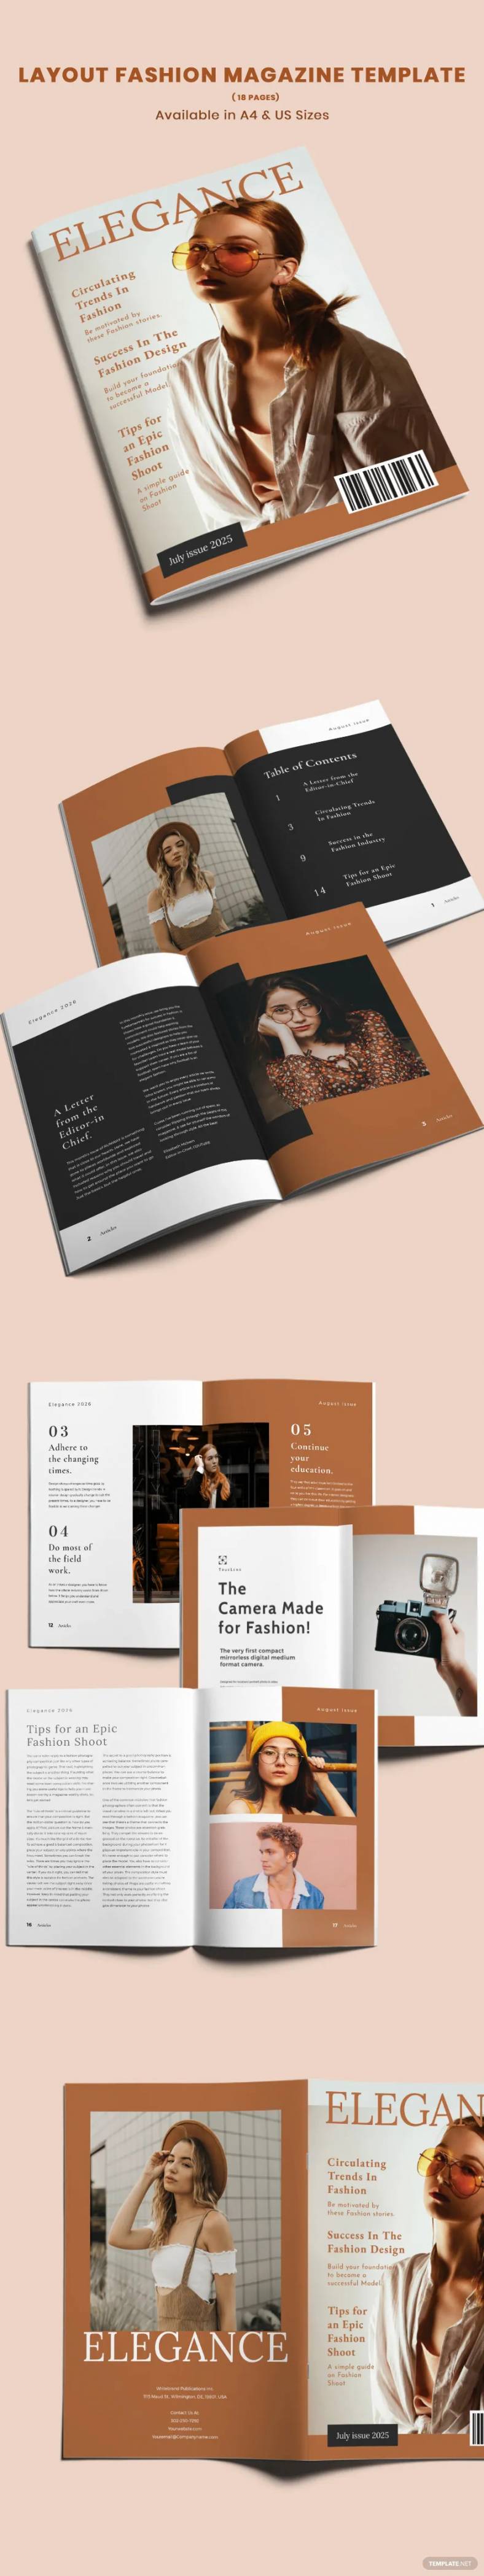 layout-fashion-magazine-1-788x4198